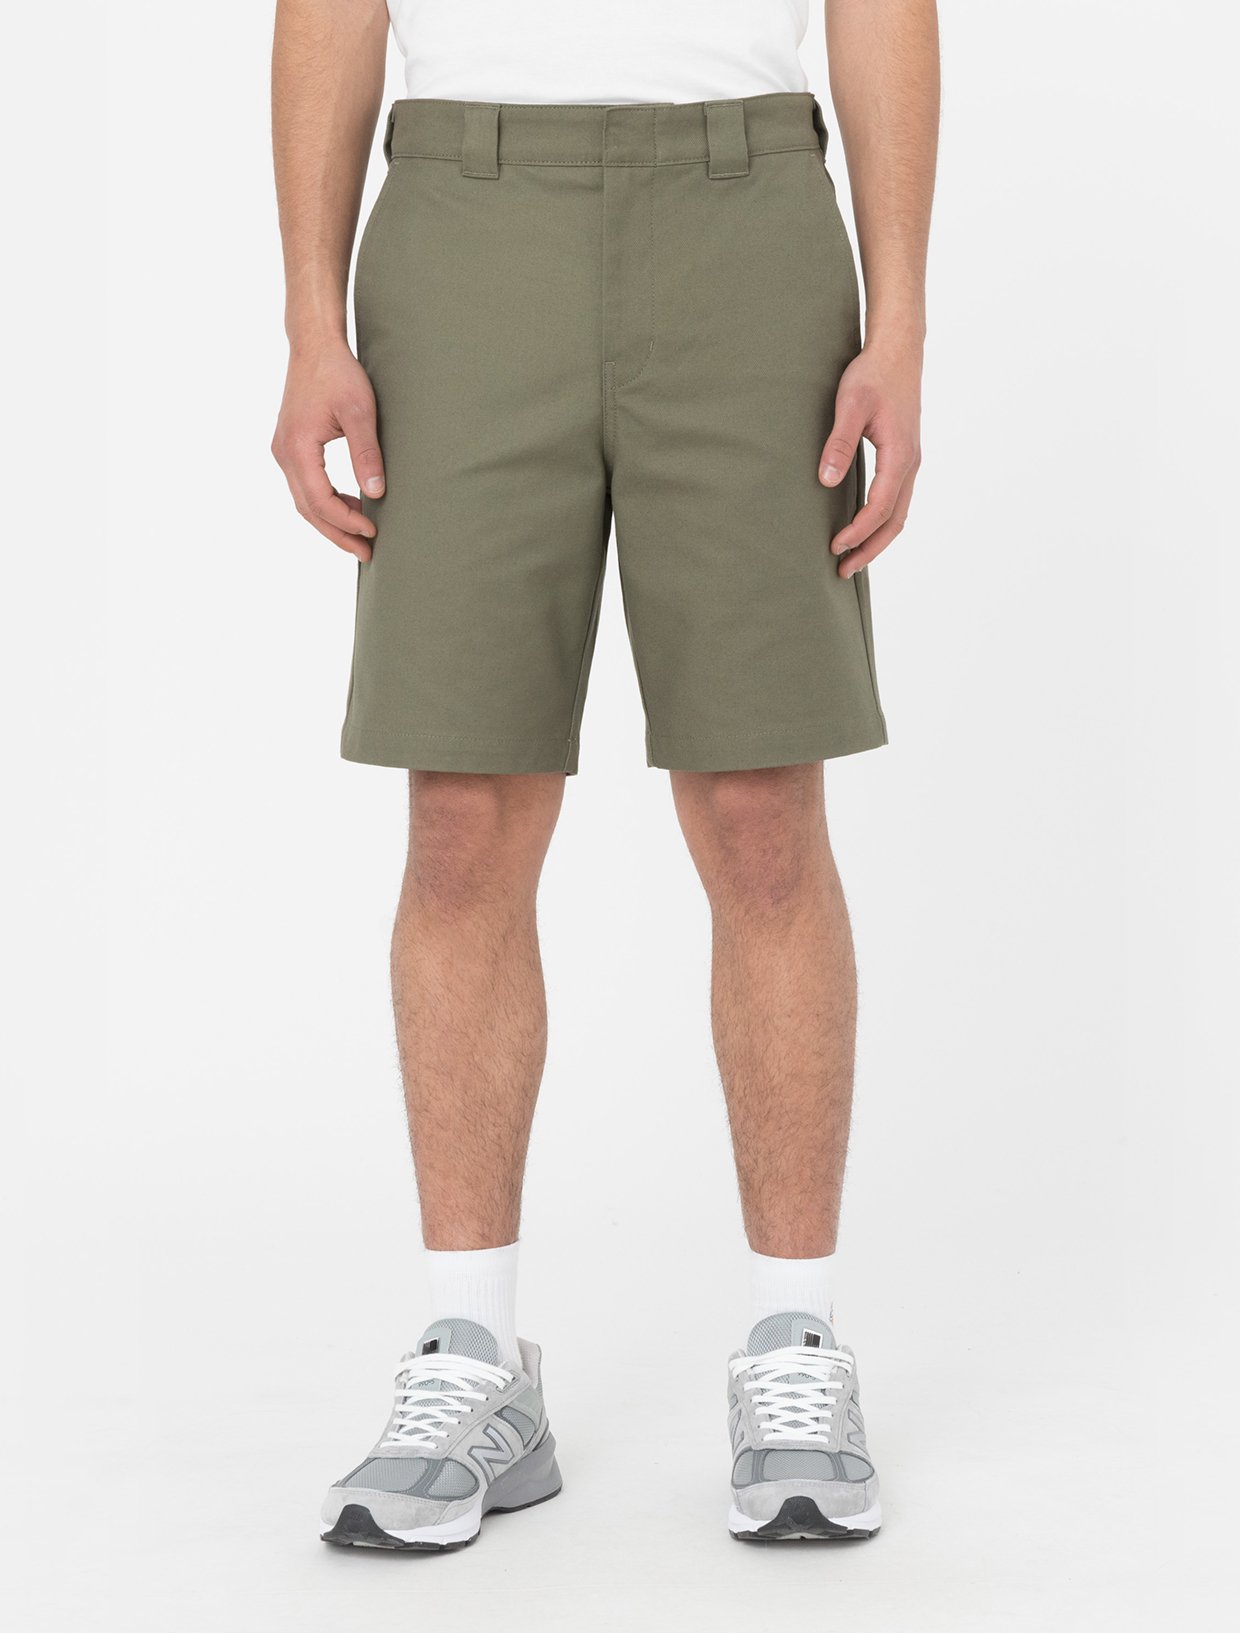 Cobden Shorts